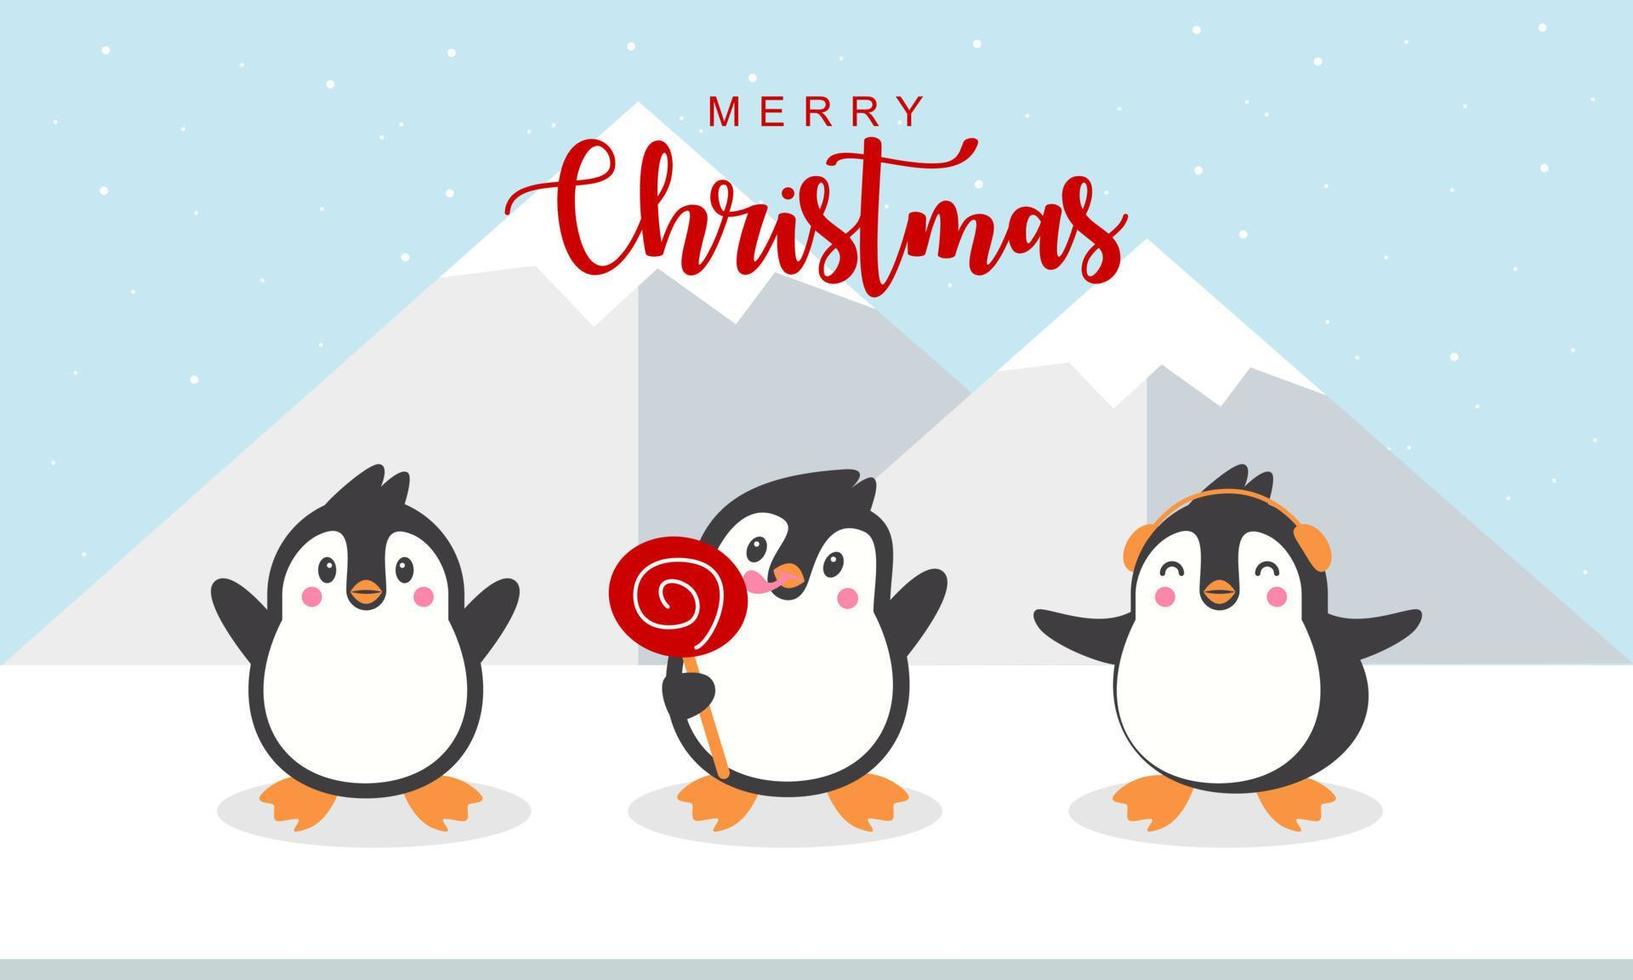 allegro Natale carta con carino inverno pinguini vettore illustrazione